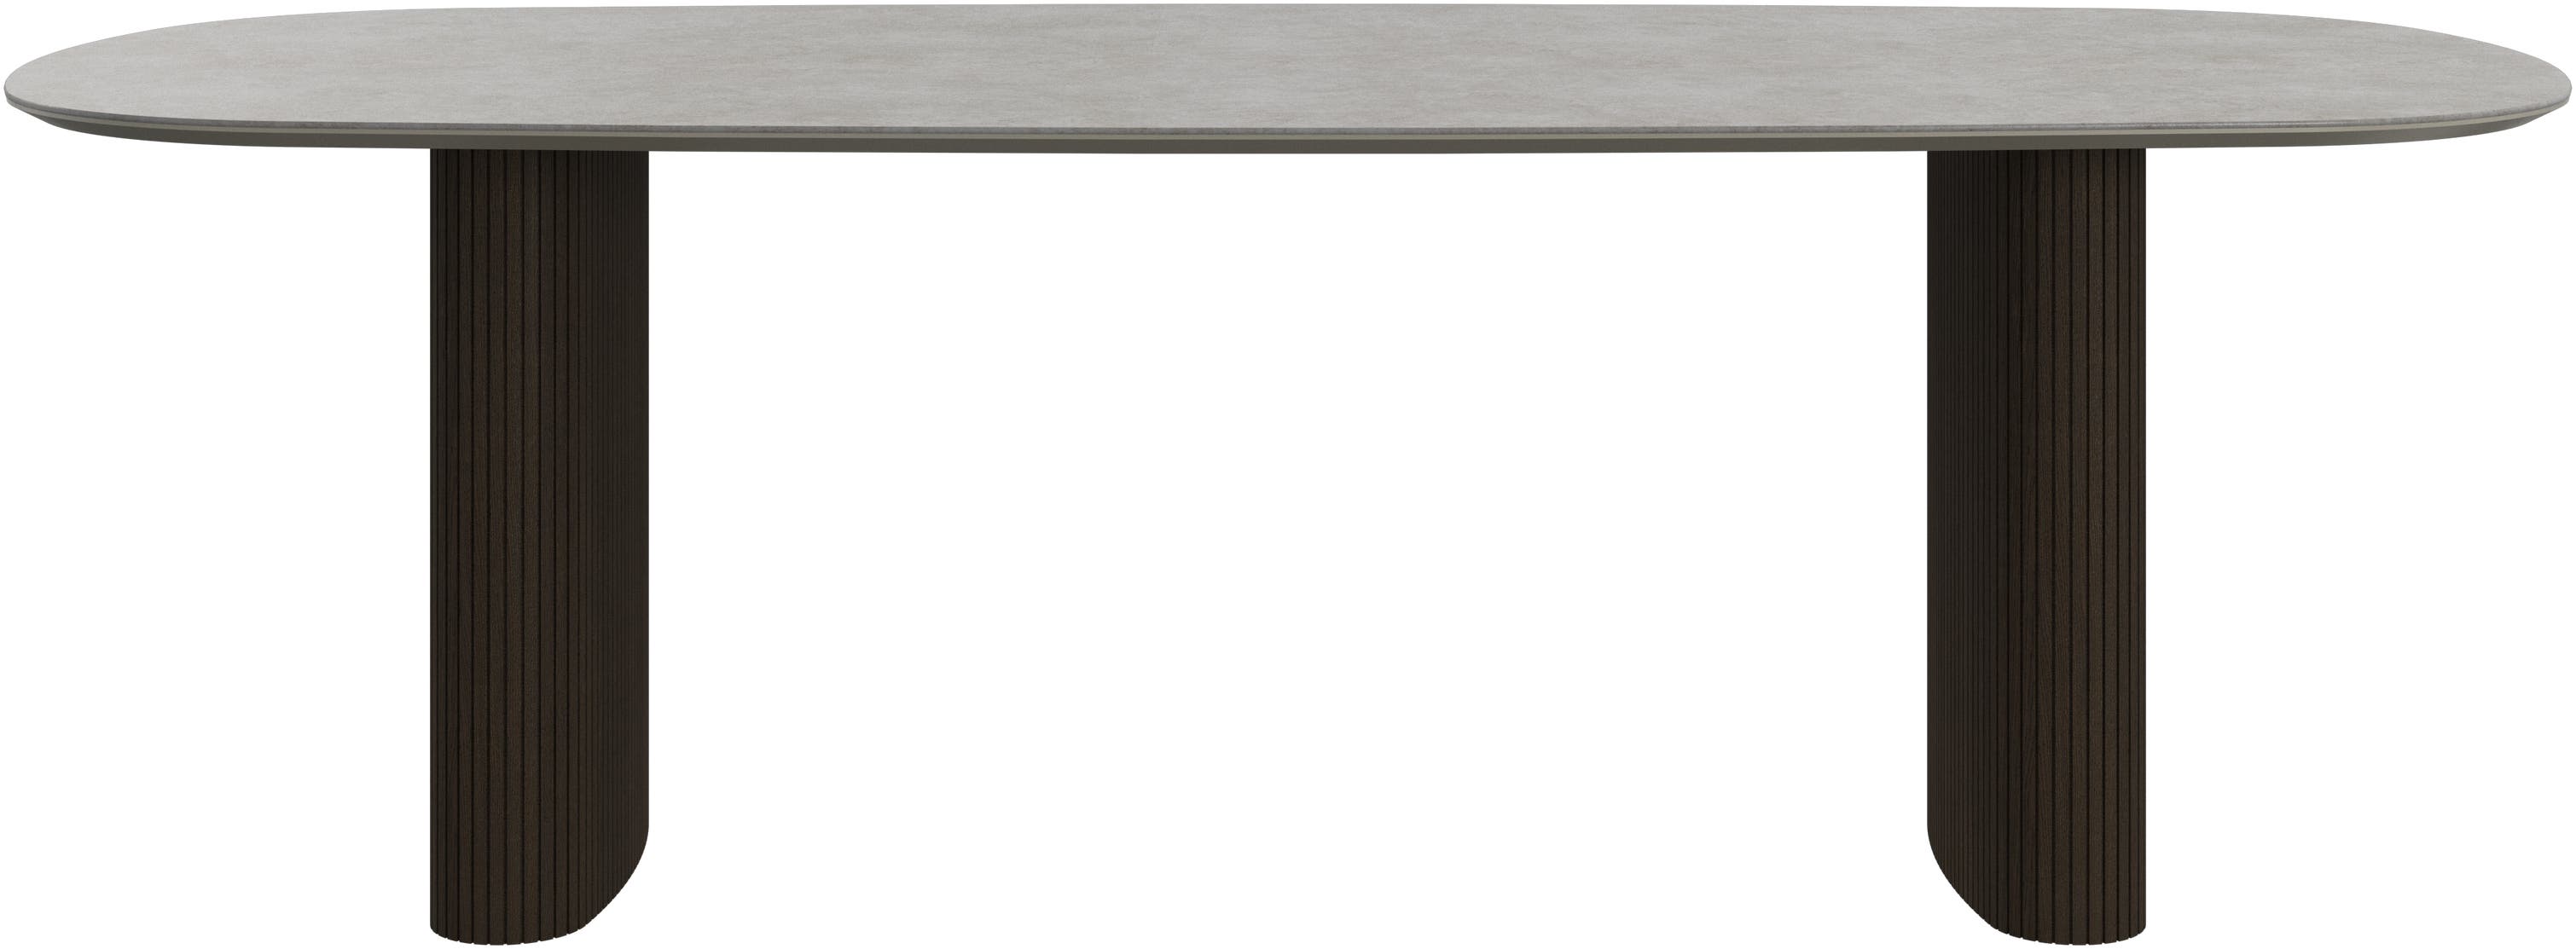 デザイナーテーブル | デンマークデザインの家具 - セラミック | ボー 